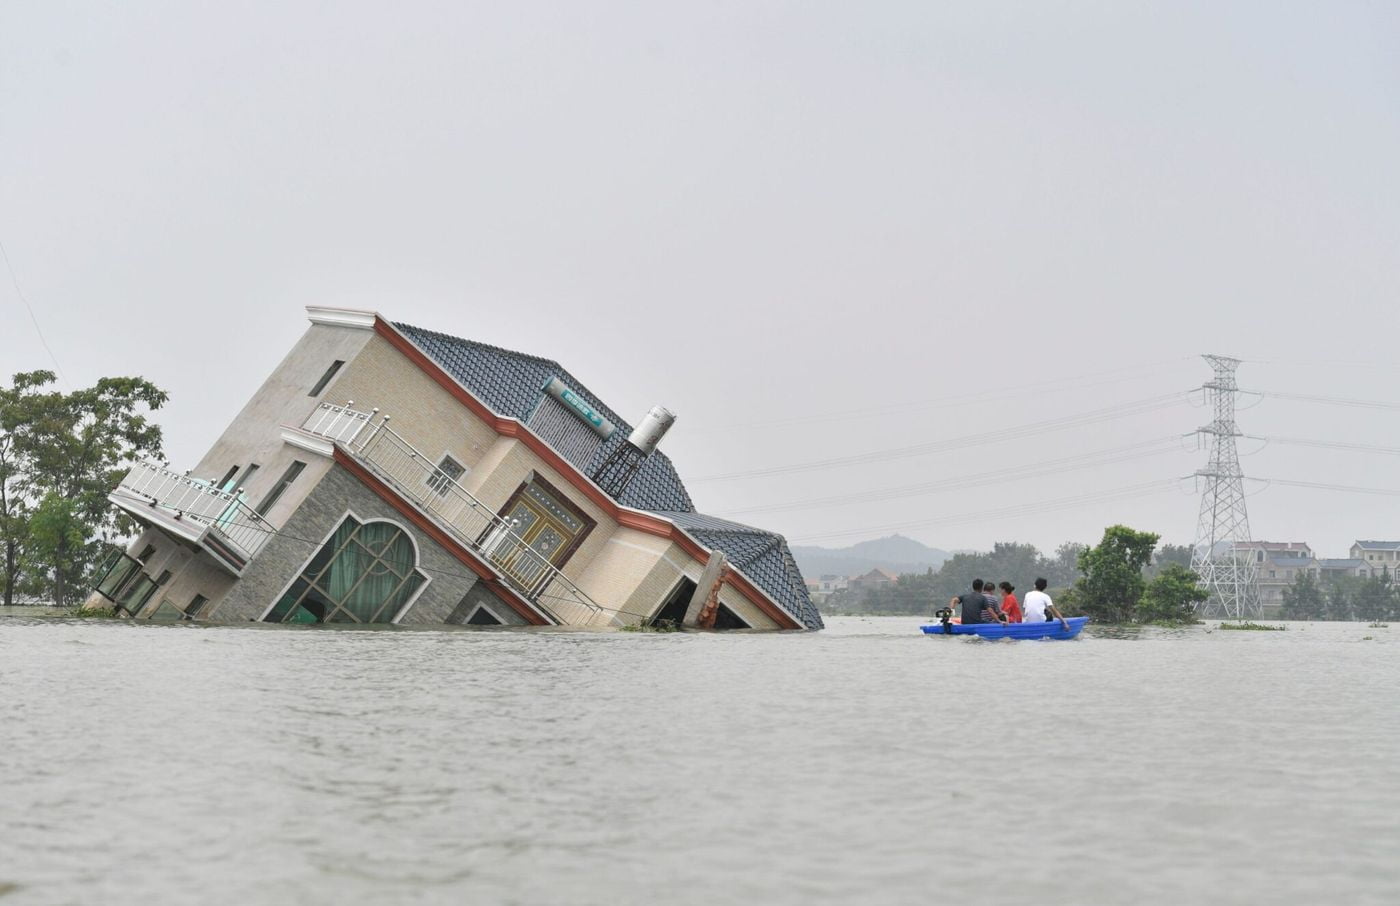 7 ways architecture uses to fight floods 03 7 طرق تستخدمها الهندسة المعمارية في مكافحة الفيضانات